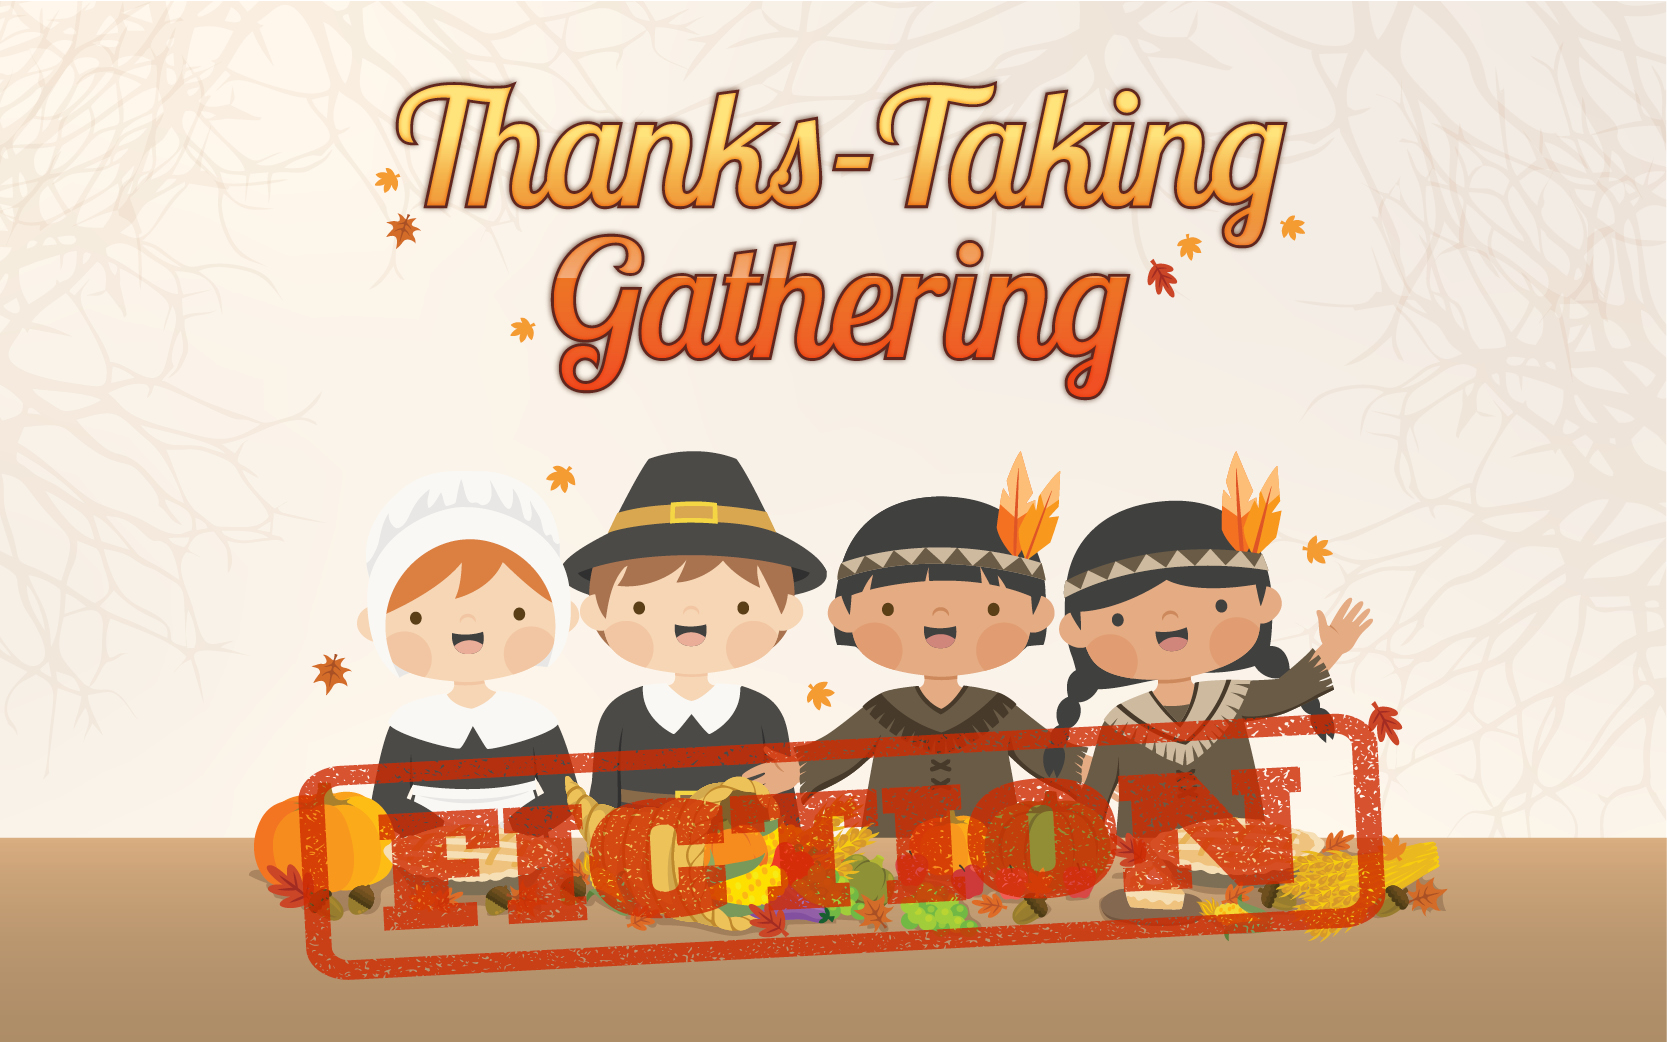 Thanks-Taking Gathering